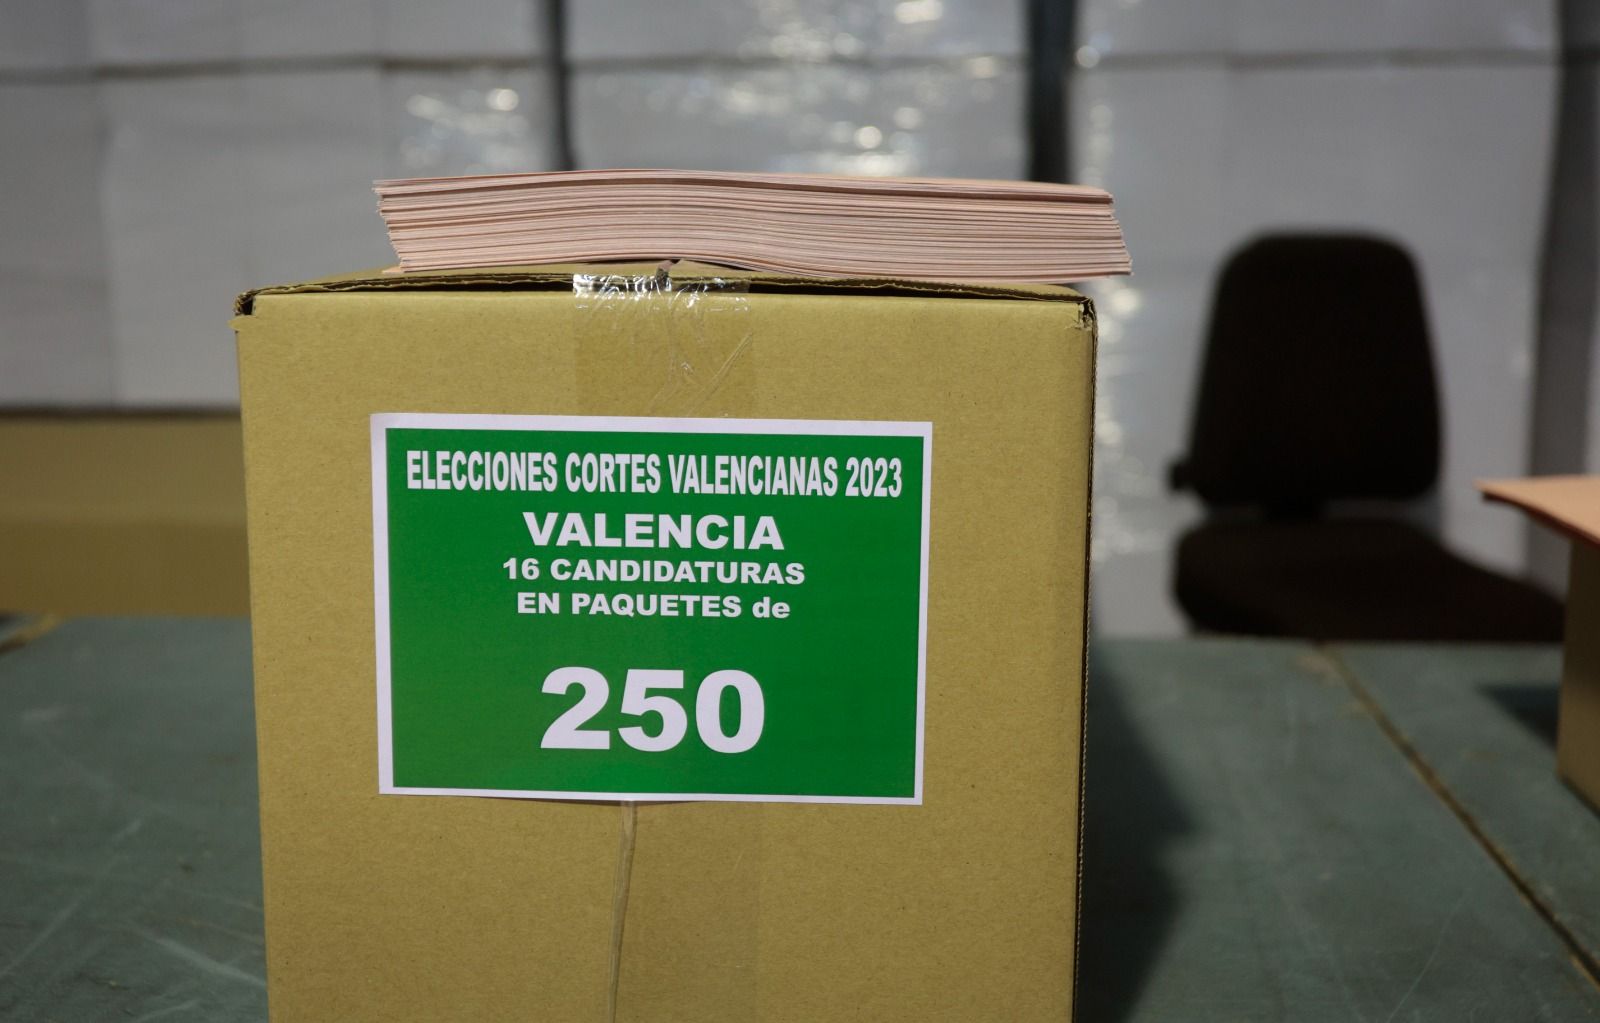 Dispositivo de preparación para el 28M en el almacén electoral de Delegación de Gobierno